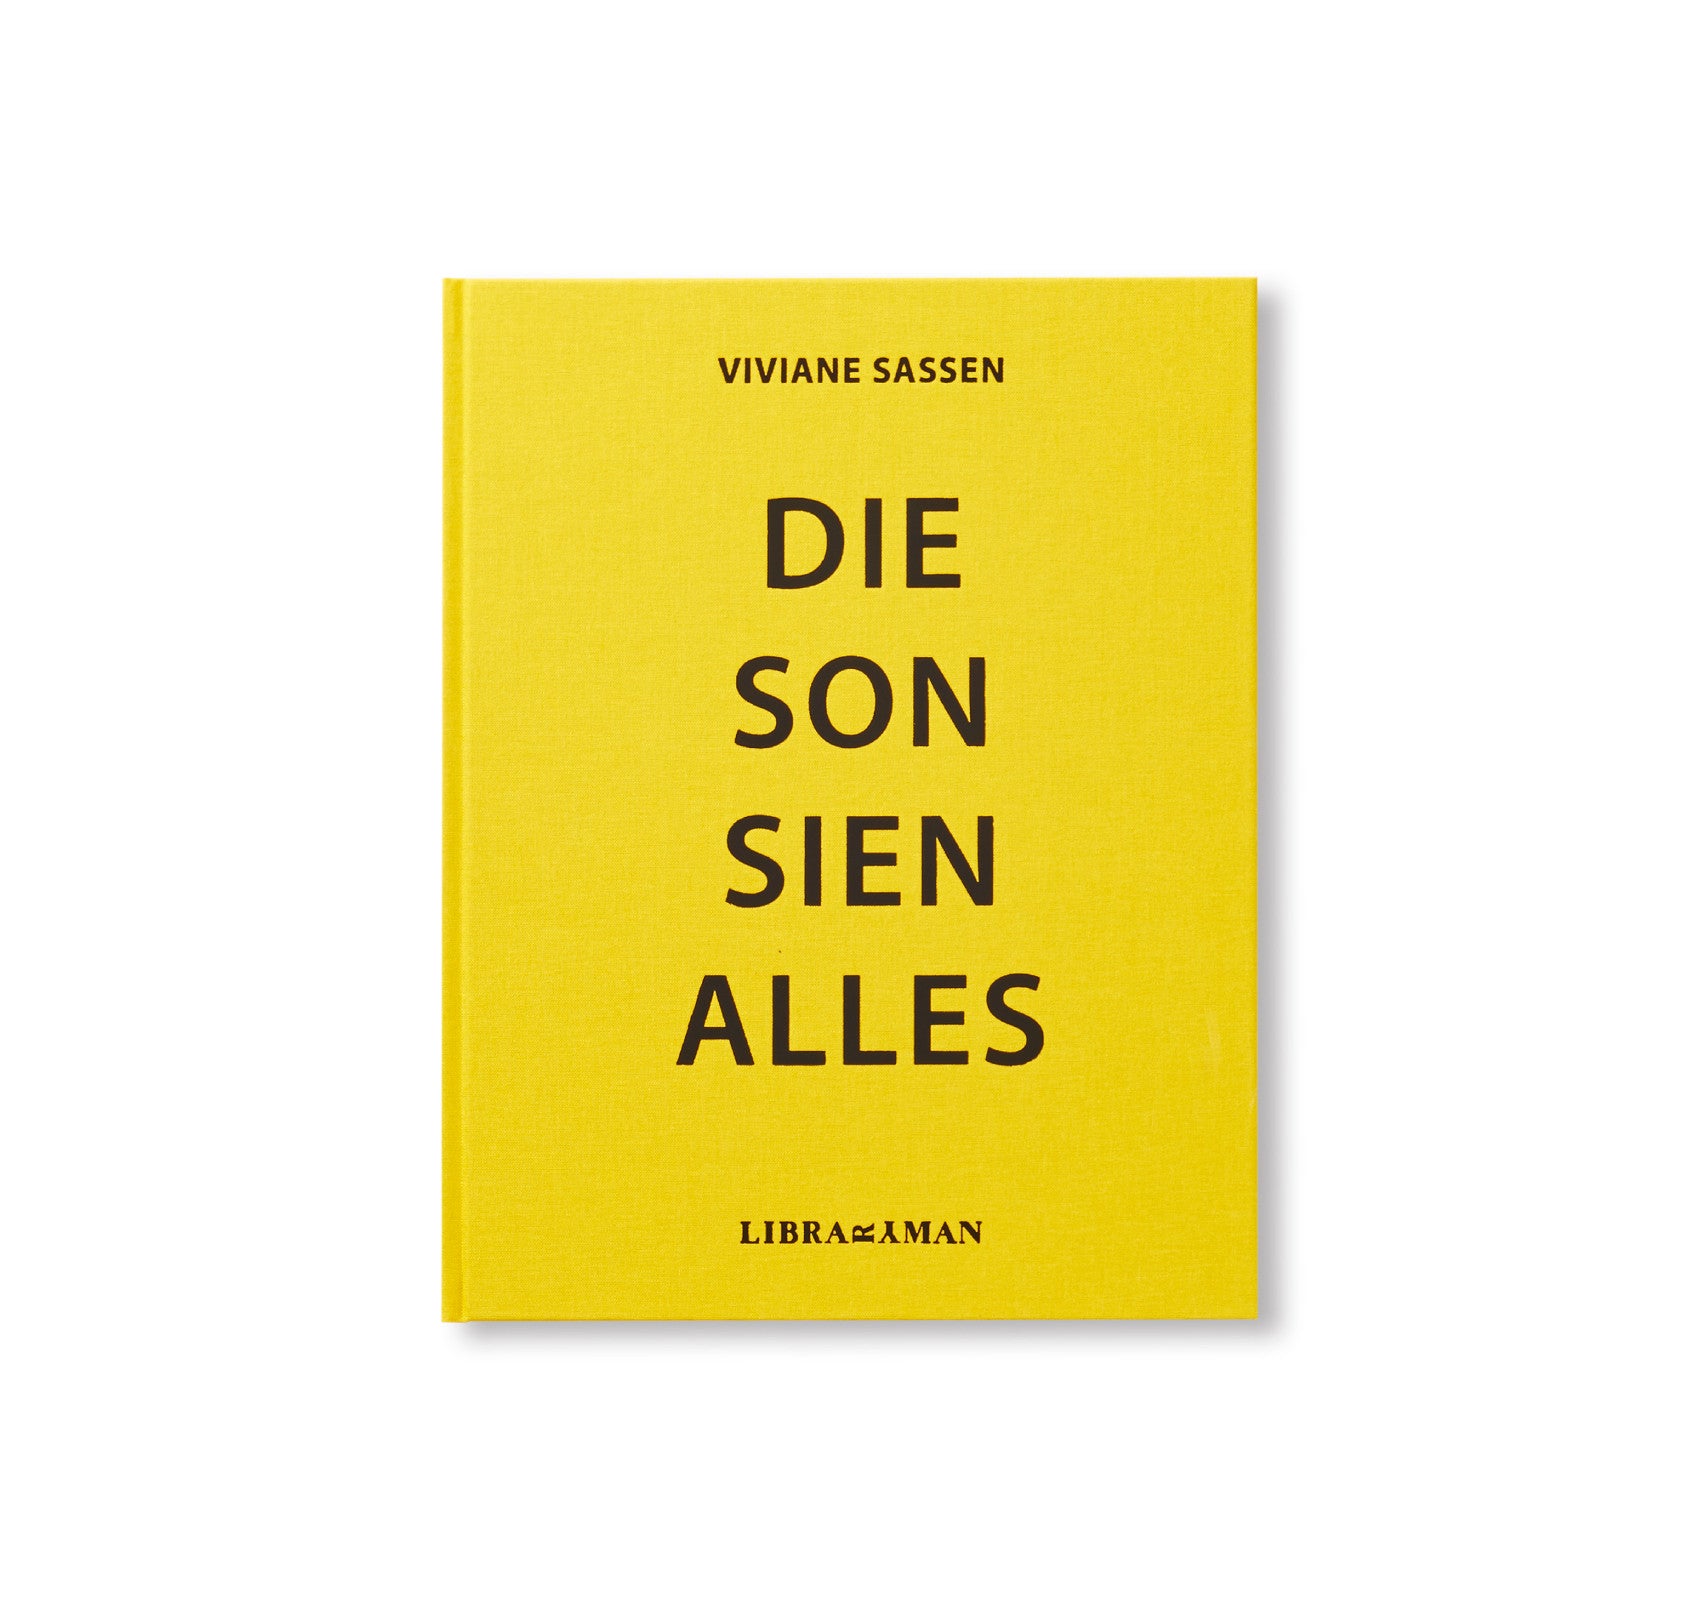 DIE SON SIEN ALLES by Viviane Sassen [SECOND EDITION / SIGNED]